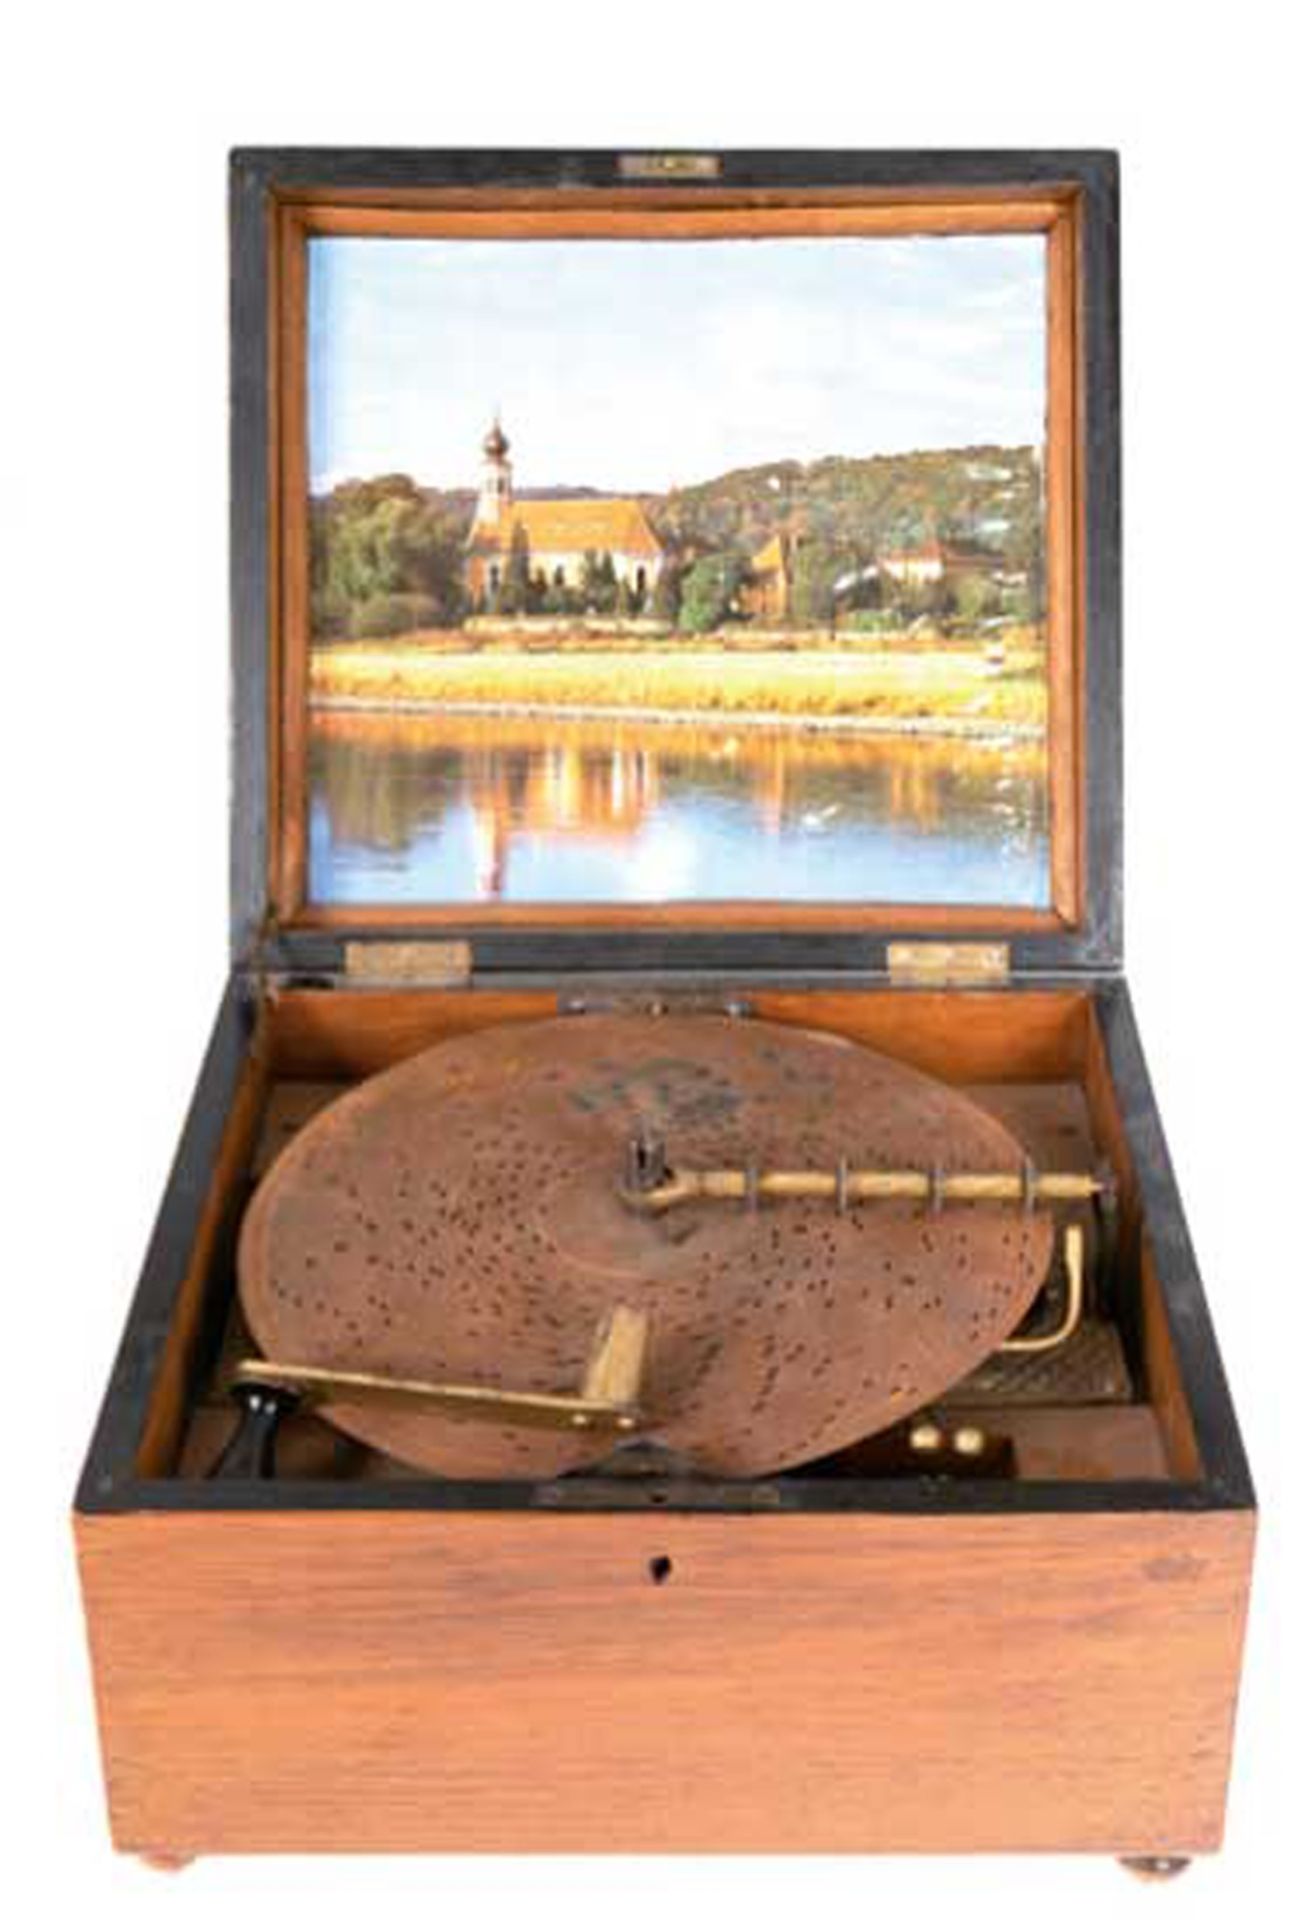 Polyphon "Kaliope", Anf. 20. Jh., Holzgehäuse, Lochplattenspielwerk mit Stimmkamm und 6 Glocken, mi - Bild 2 aus 2